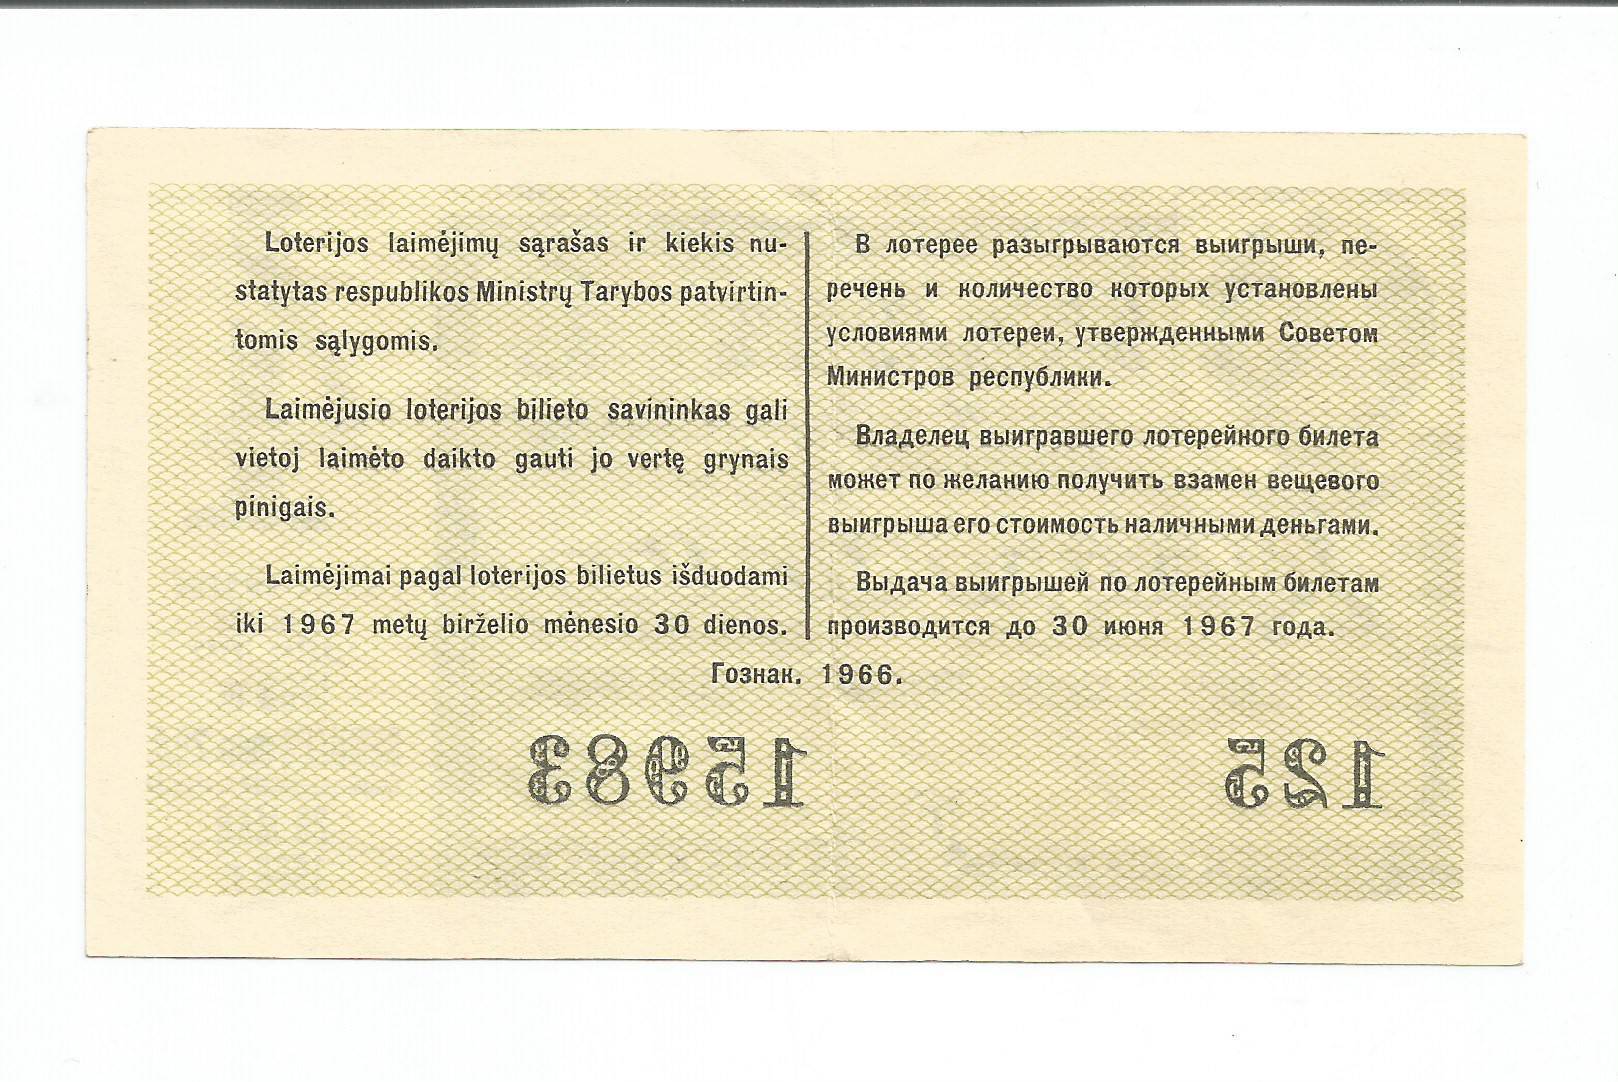 Билет 30 вопрос 6. Лотерея 1963.